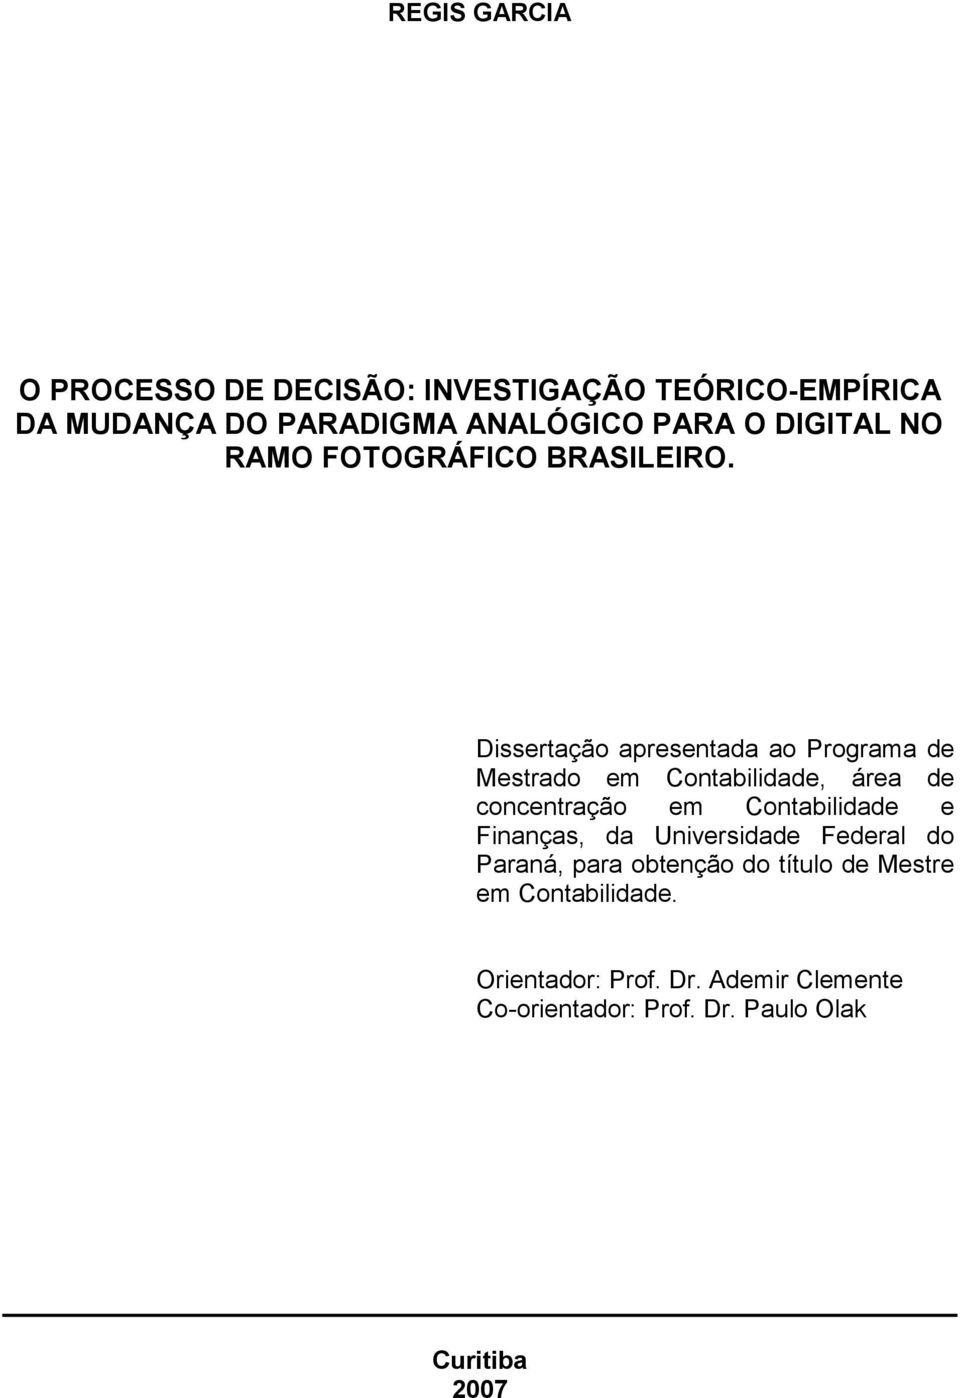 Dissertação apresentada ao Programa de Mestrado em Contabilidade, área de concentração em Contabilidade e